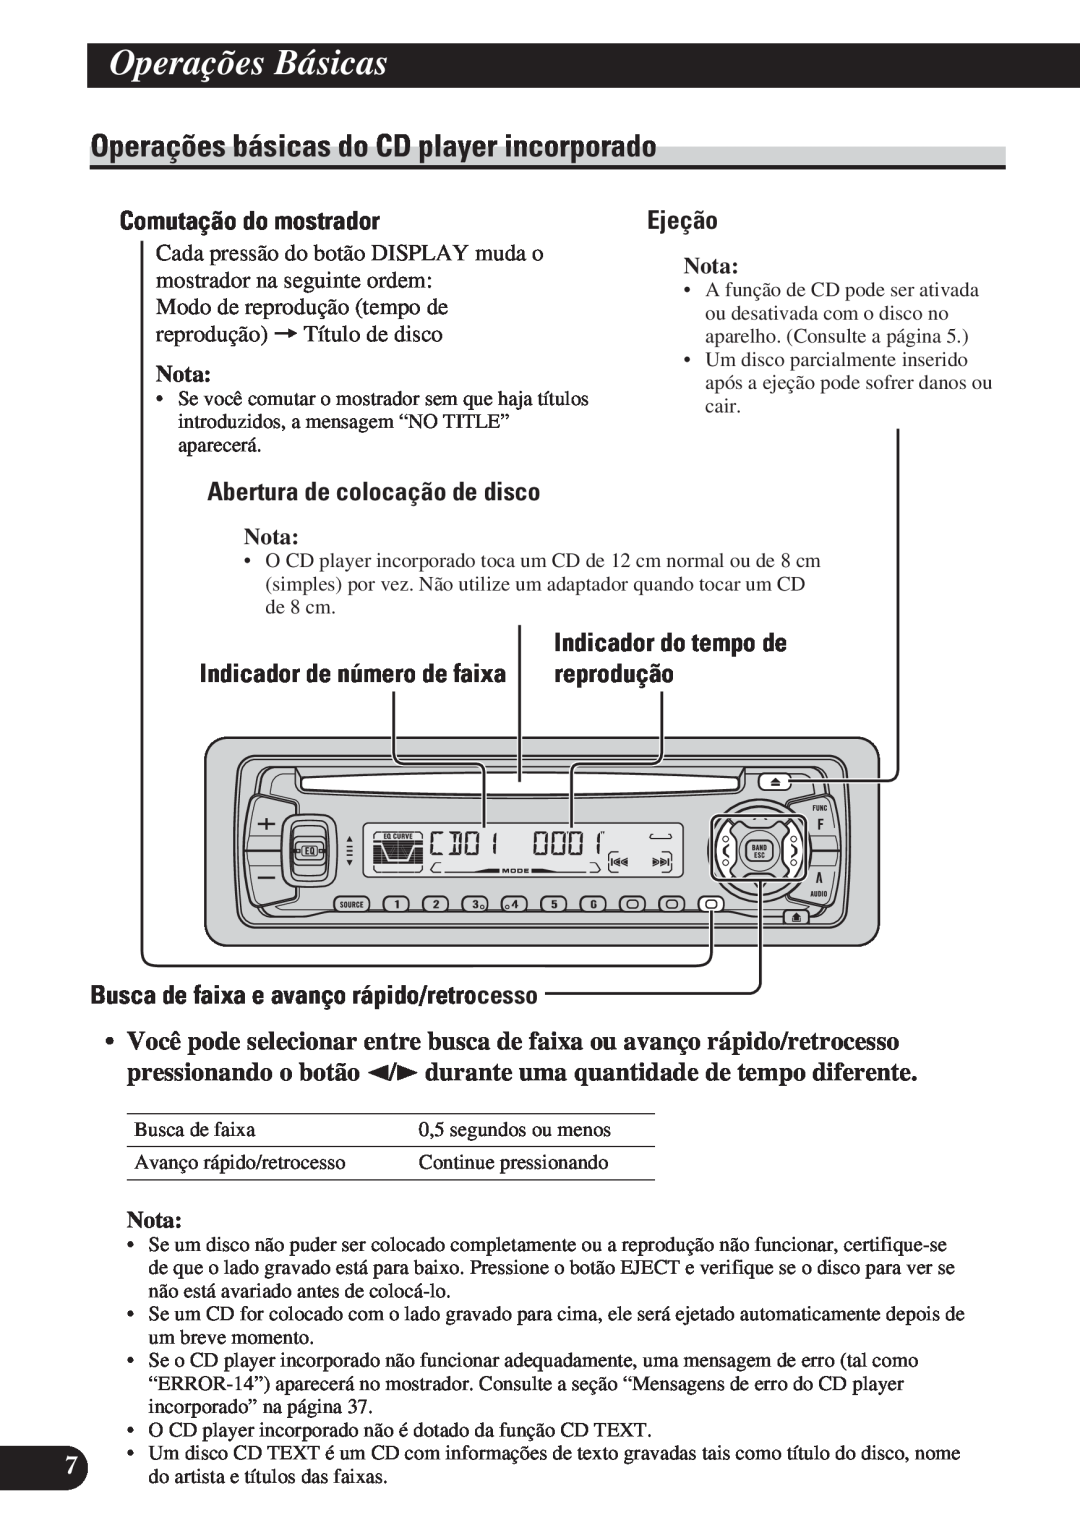 Pioneer DEH-P3150 Operações básicas do CD player incorporado, Comutação do mostrador, Ejeção, Indicador de número de faixa 